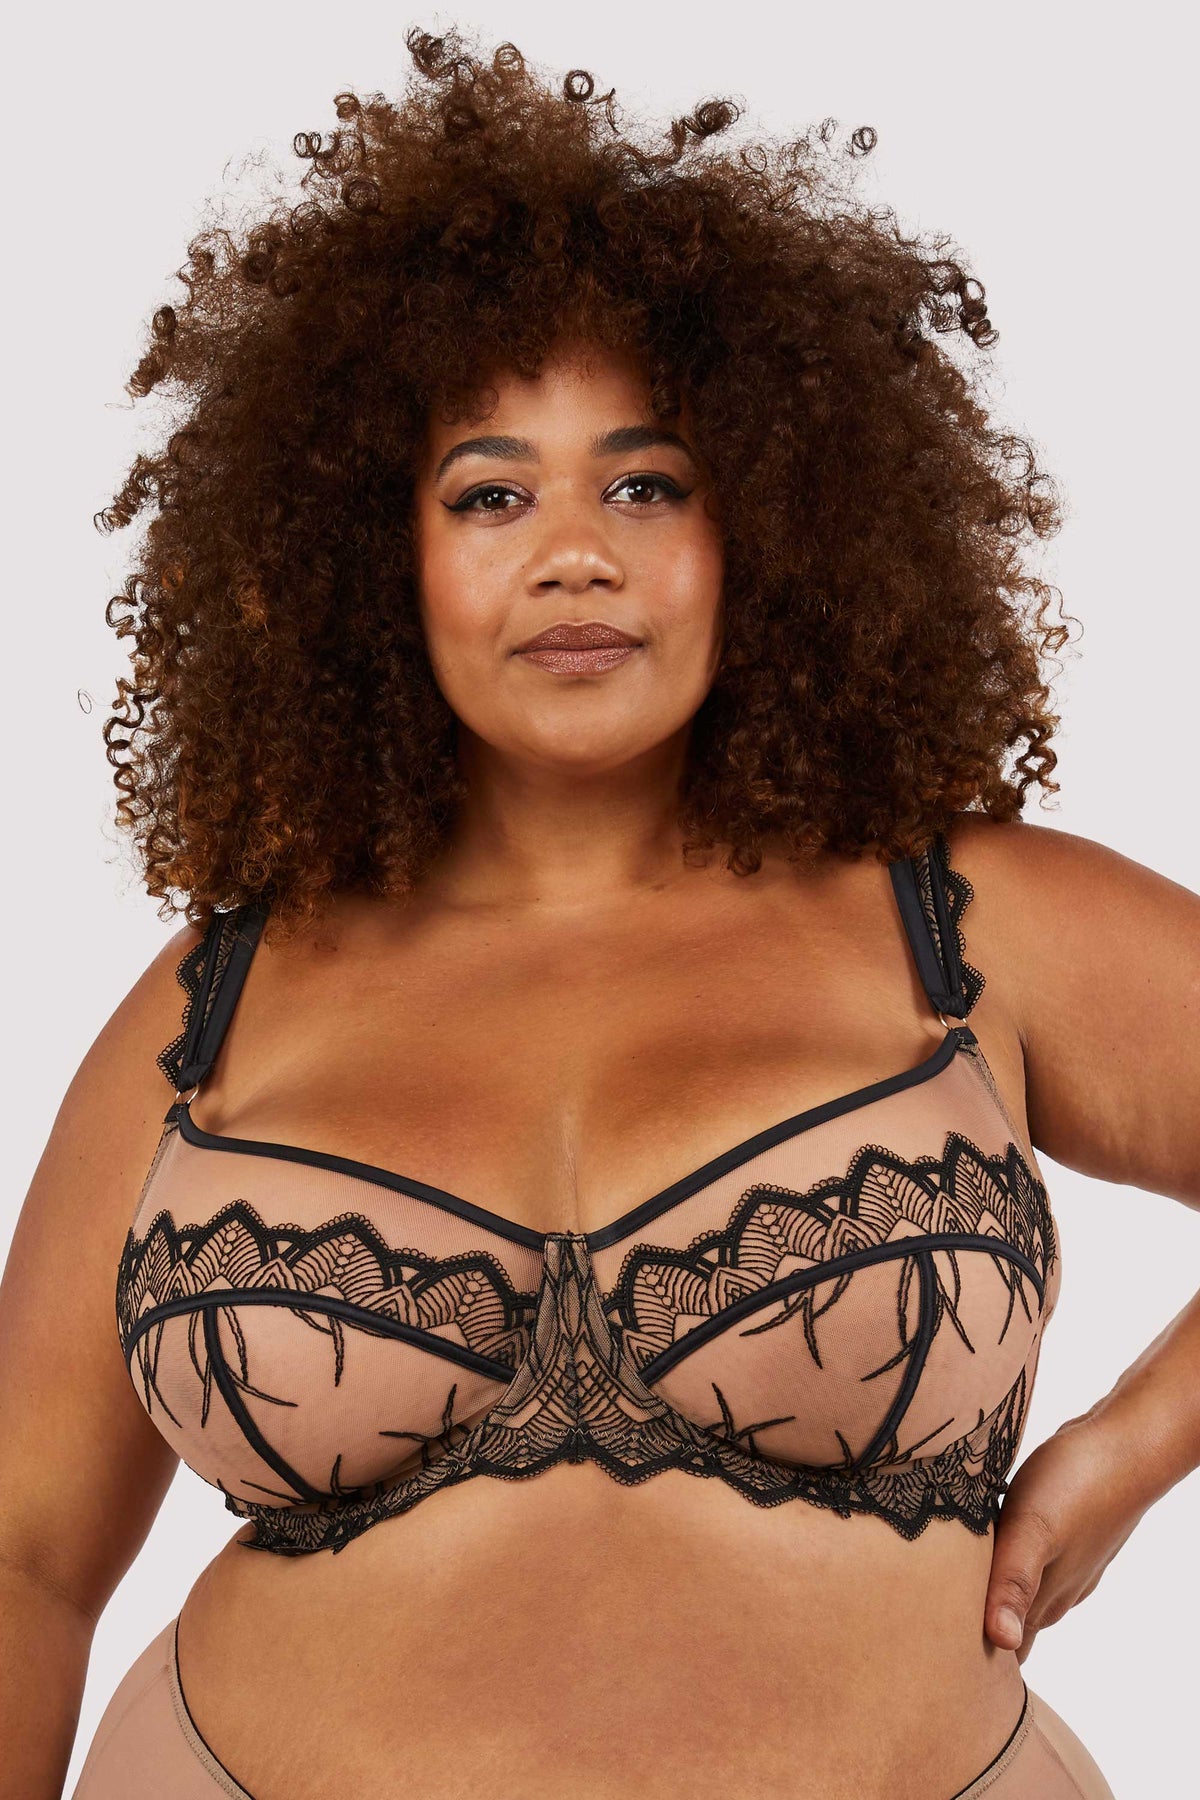 Olivia B Lingerie - bra sizes - 36H, 36J, 38GG, 38H, 40DD, 40E